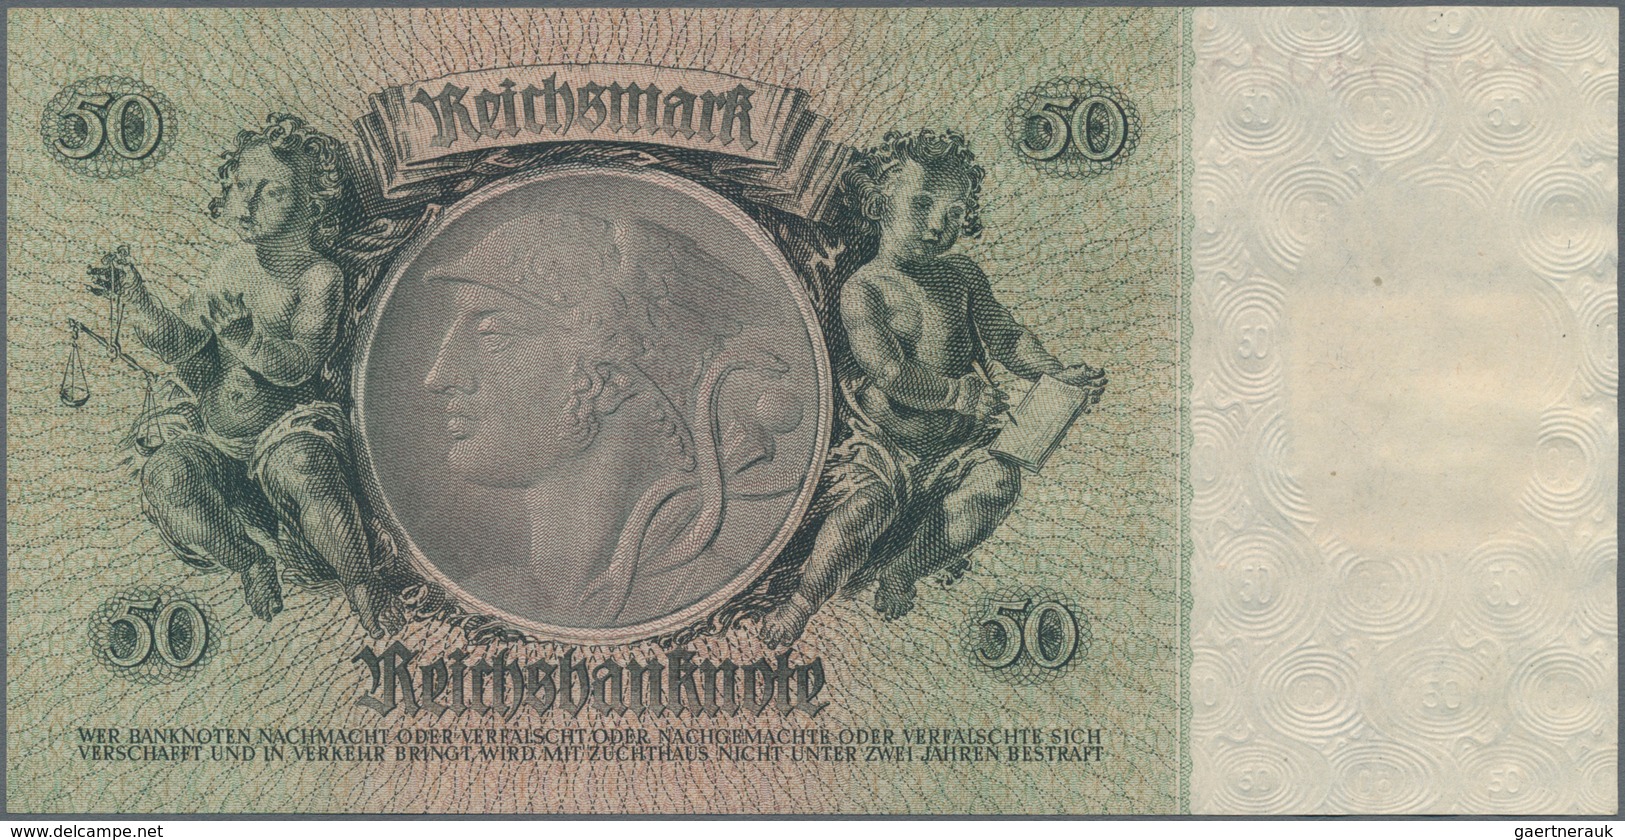 Deutschland - DDR: Kuponausgaben 1948 mit 10, 20, 50 und 100 Mark, Ro.334, 335, 337, 338 in kassenfr